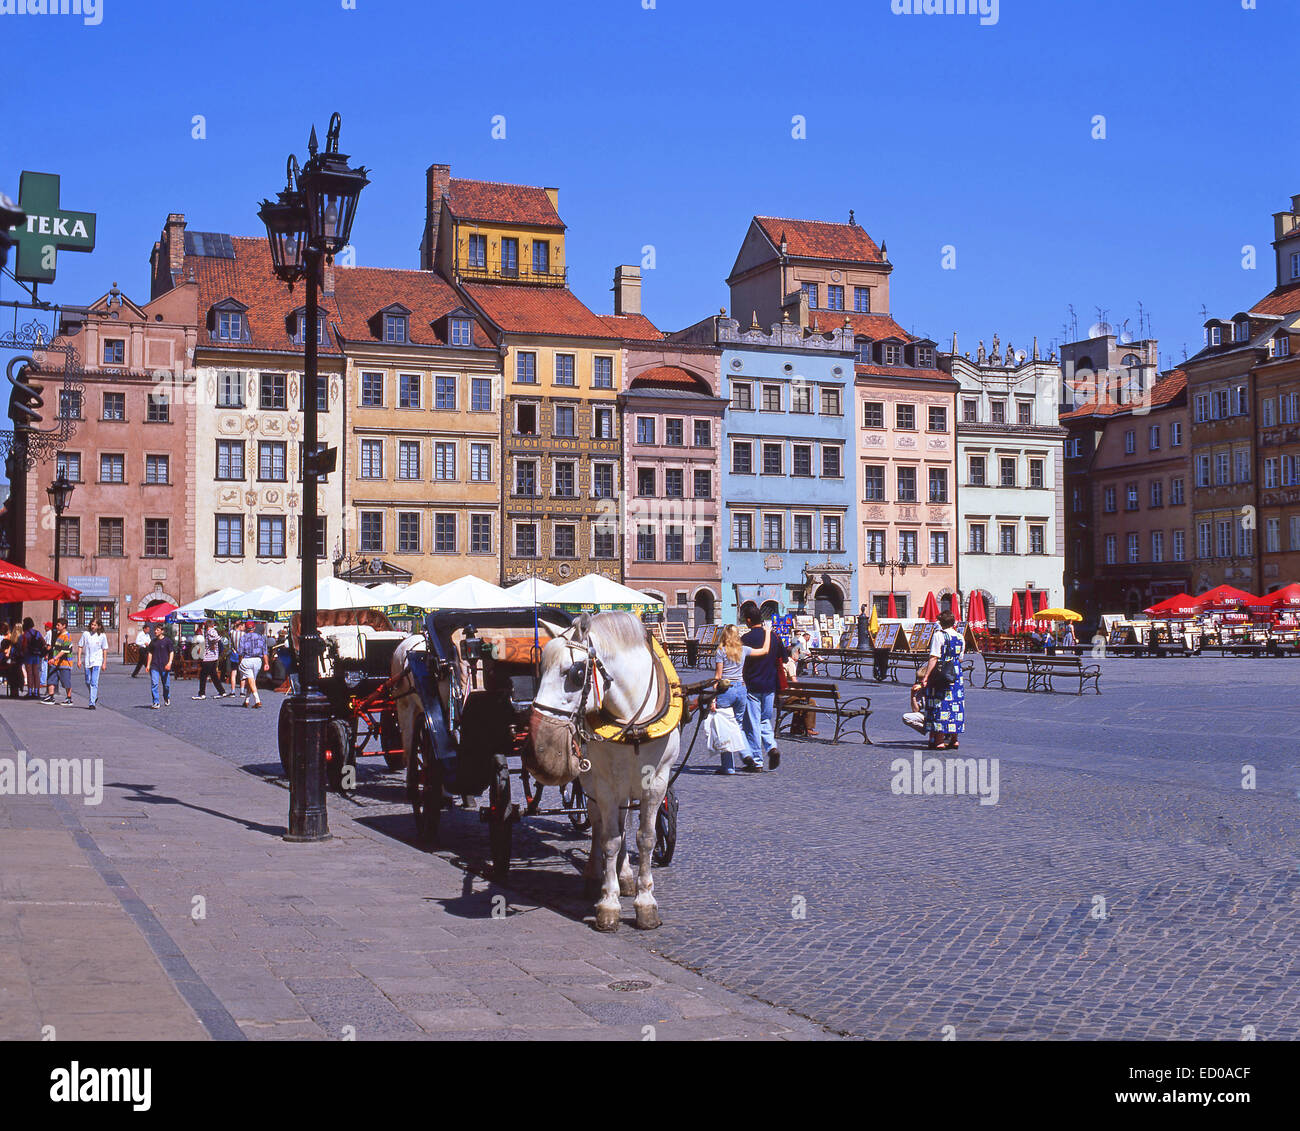 Place du marché de la vieille ville, vieille ville, Varsovie (Varsovie), République de Pologne Banque D'Images